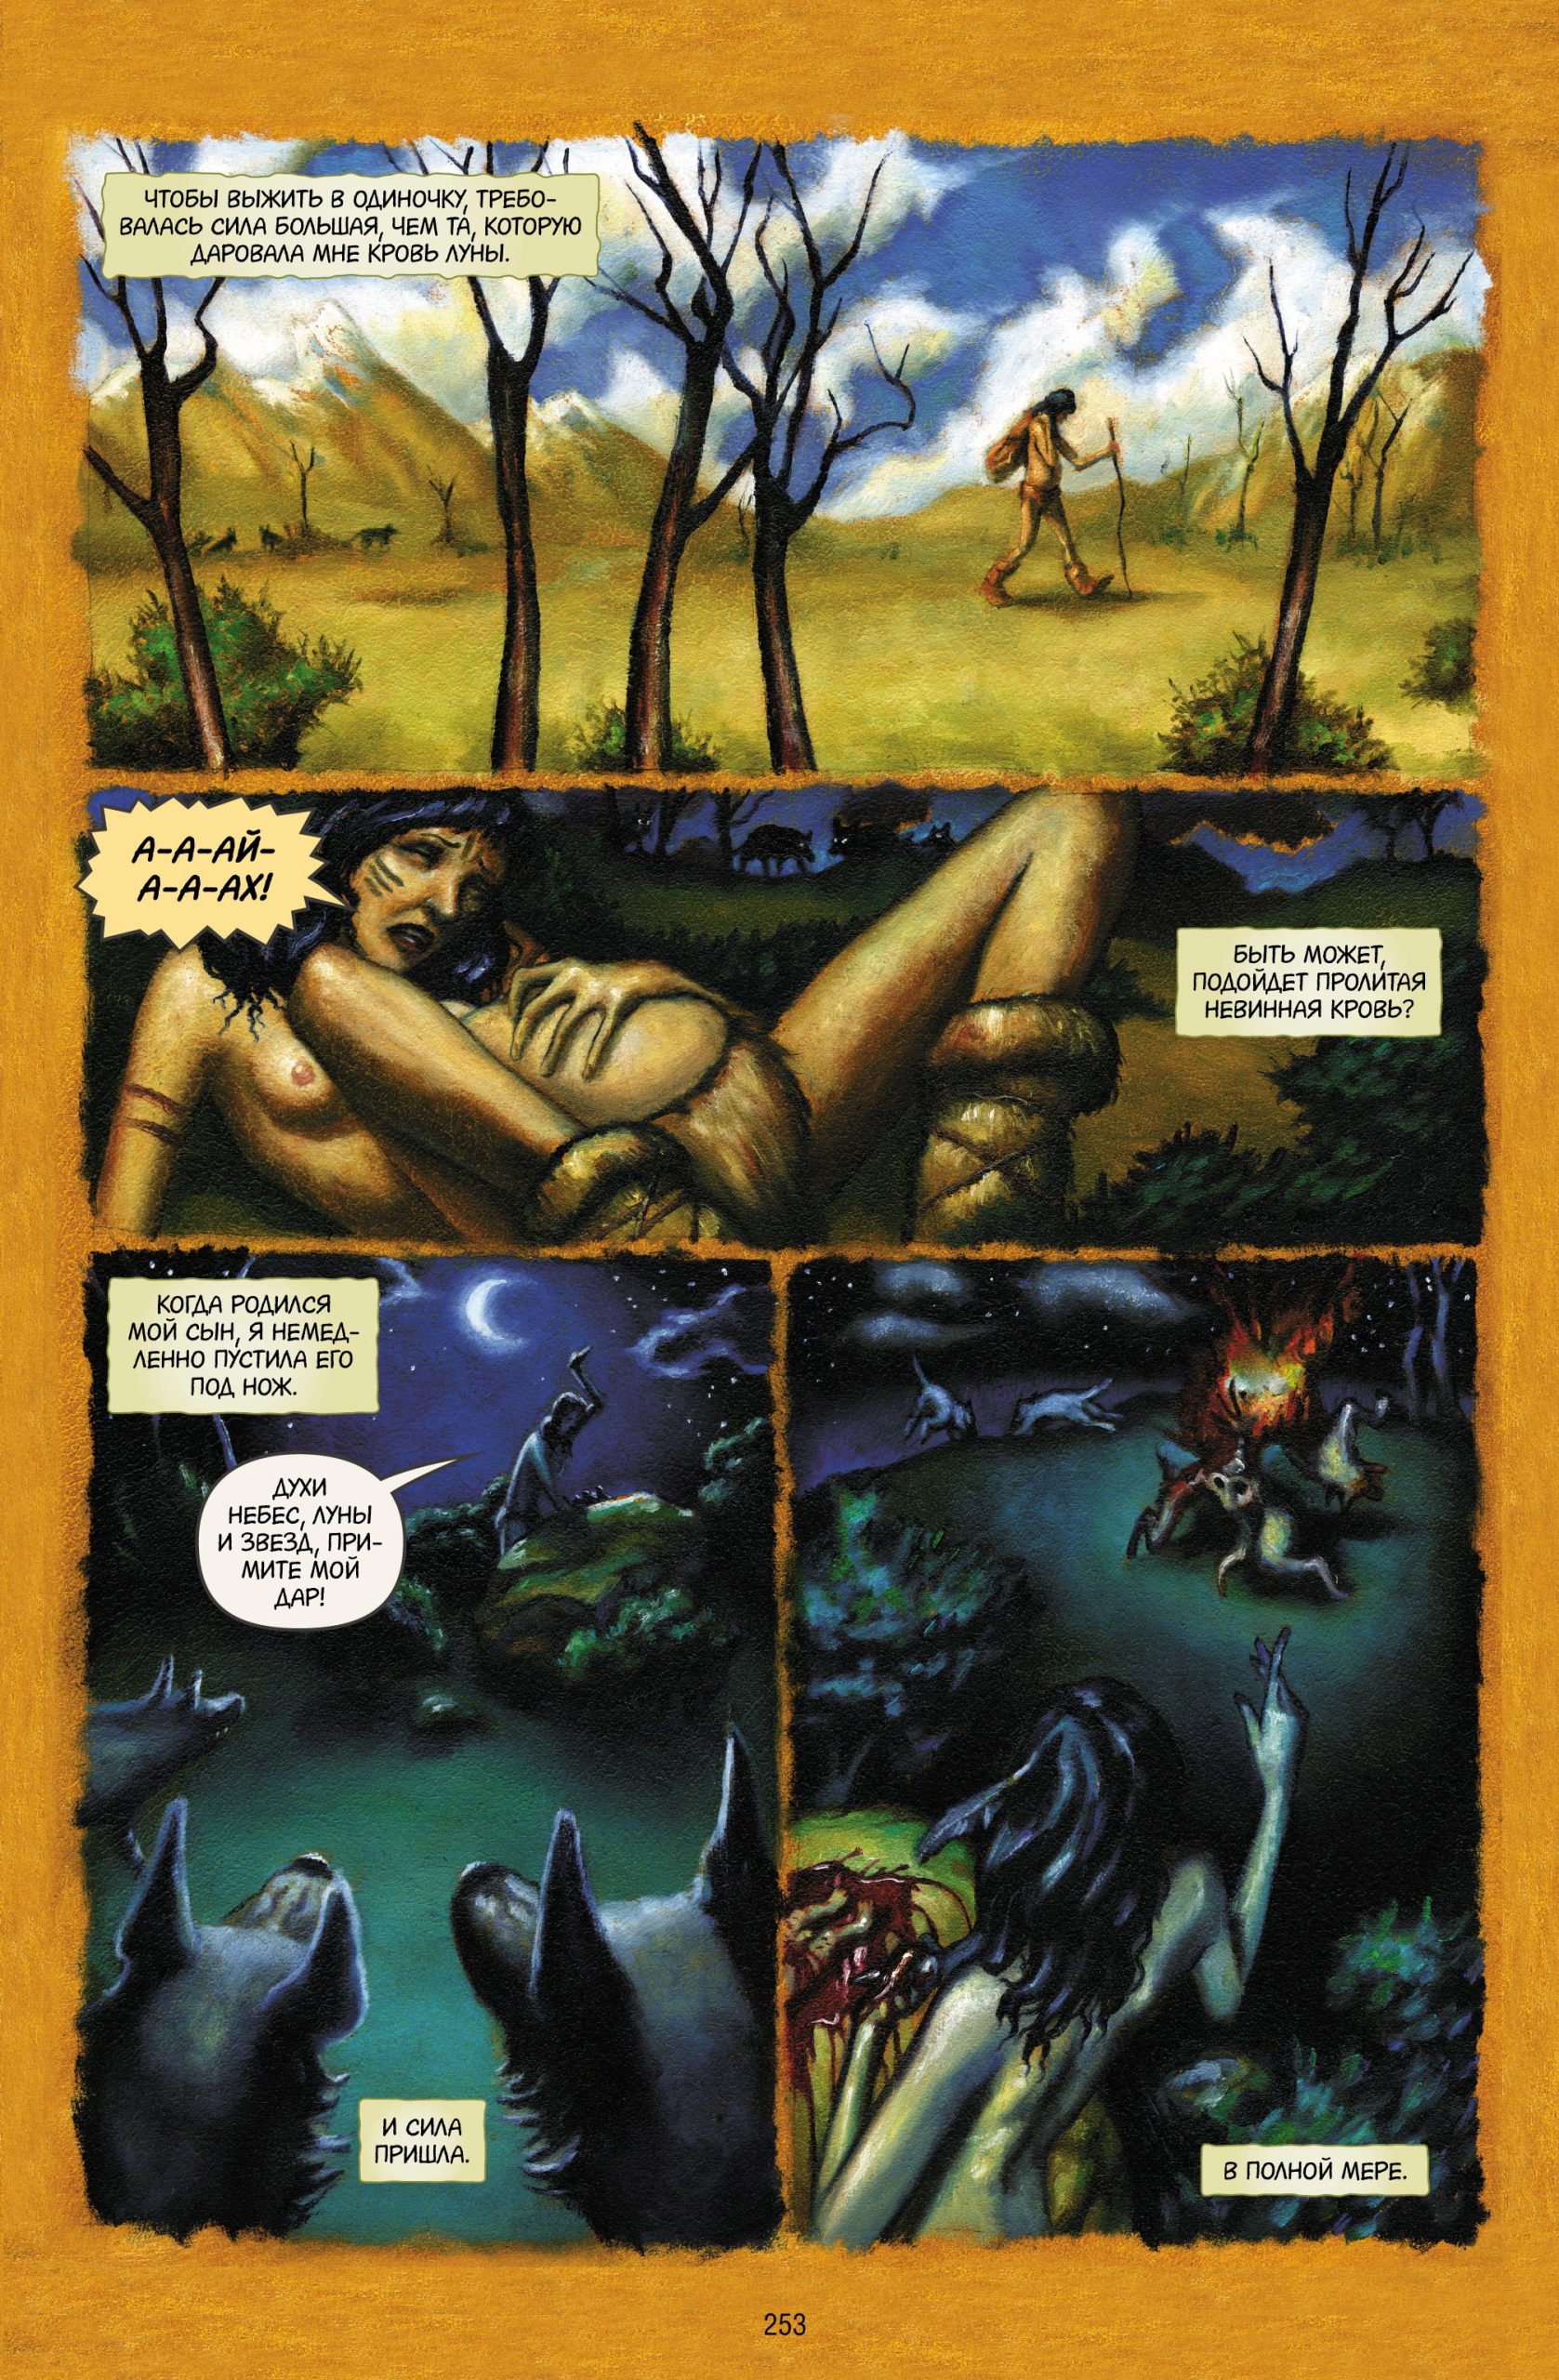 Читаем комикс «Сказки: Диаспора»: жестокие сказки о древней ведьме 1